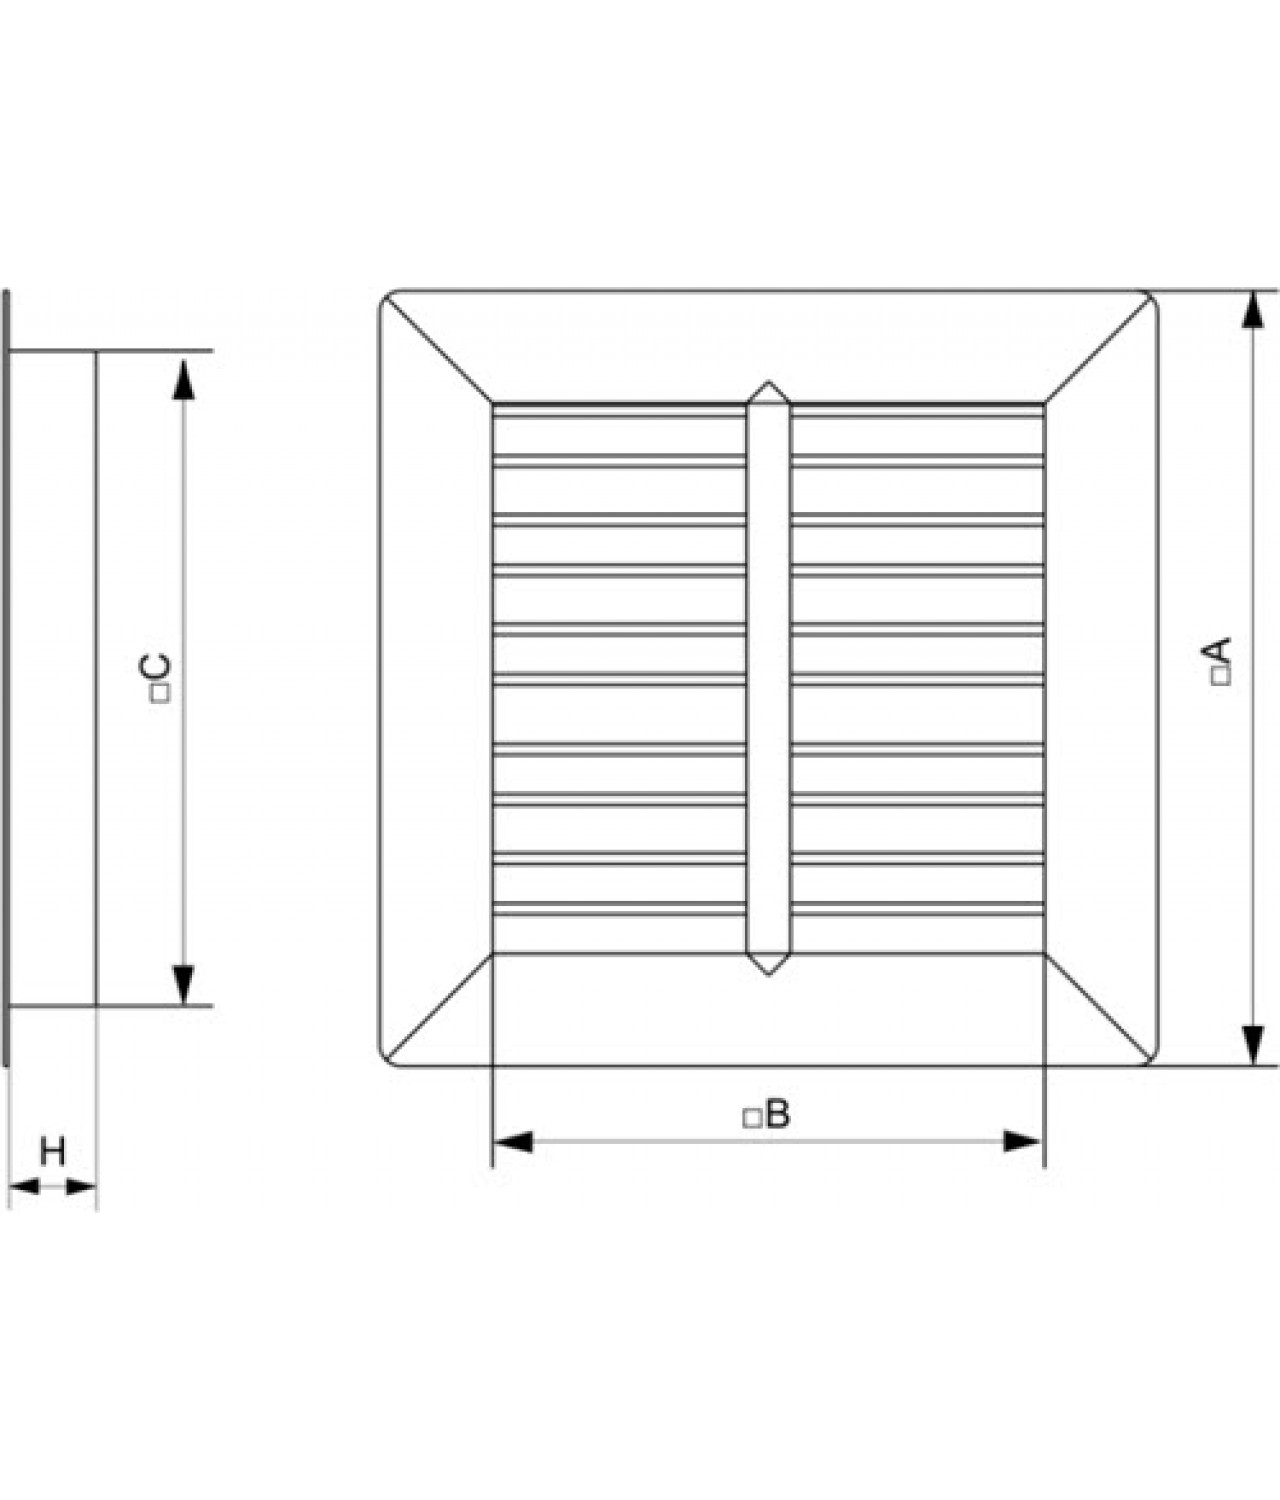 Вентиляционные решетки гравитационные GG500-900 - чертеж